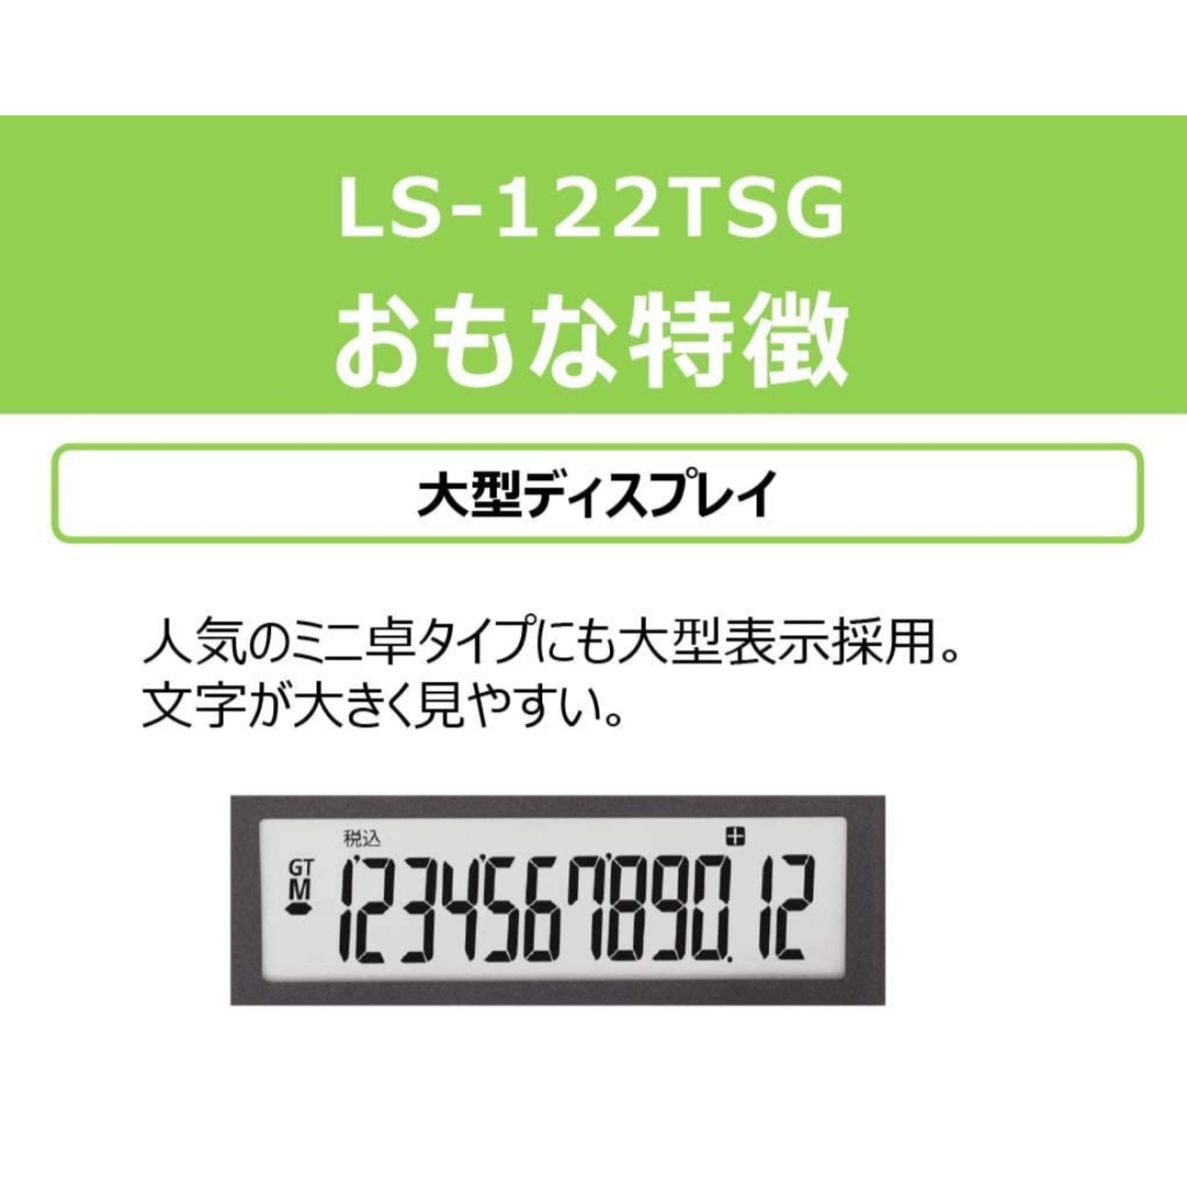 *+:☆ Canon 12桁電卓 LS-122TSG ミニ卓上サイズ 時間計算 商売計算機能付 グリーン購入法適合商品 ☆:+*